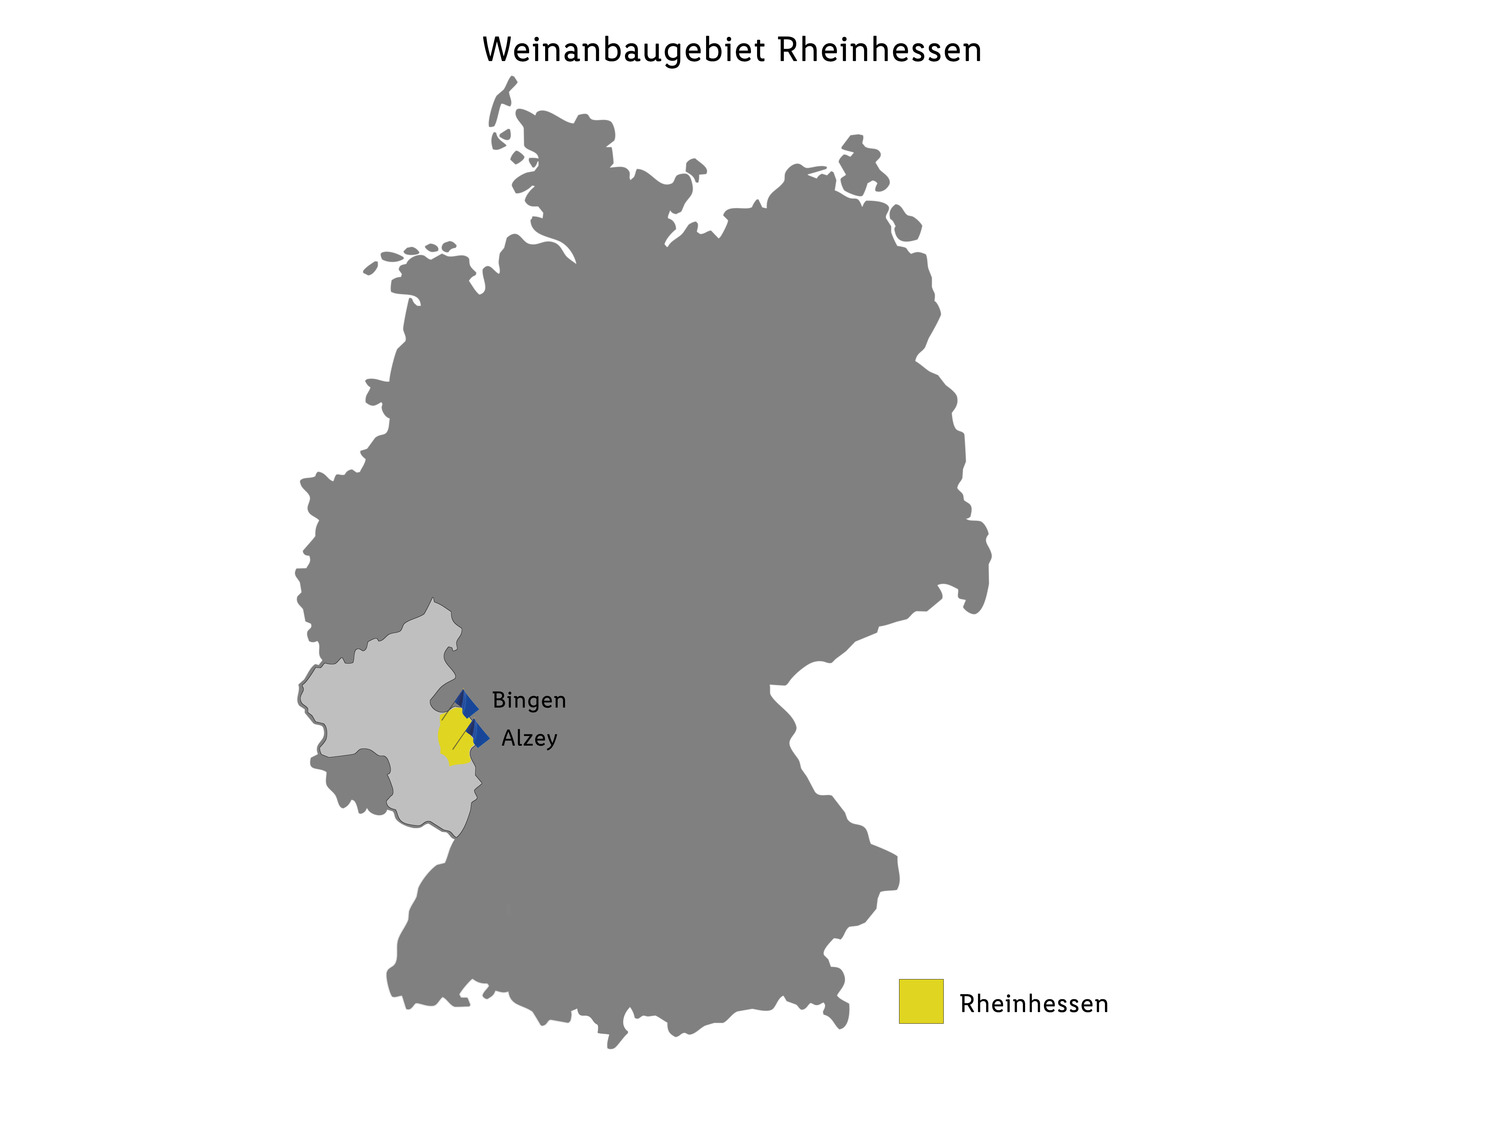 QbA Riesling | LIDL Weißwein lieblich, 2020 Rheinhessen